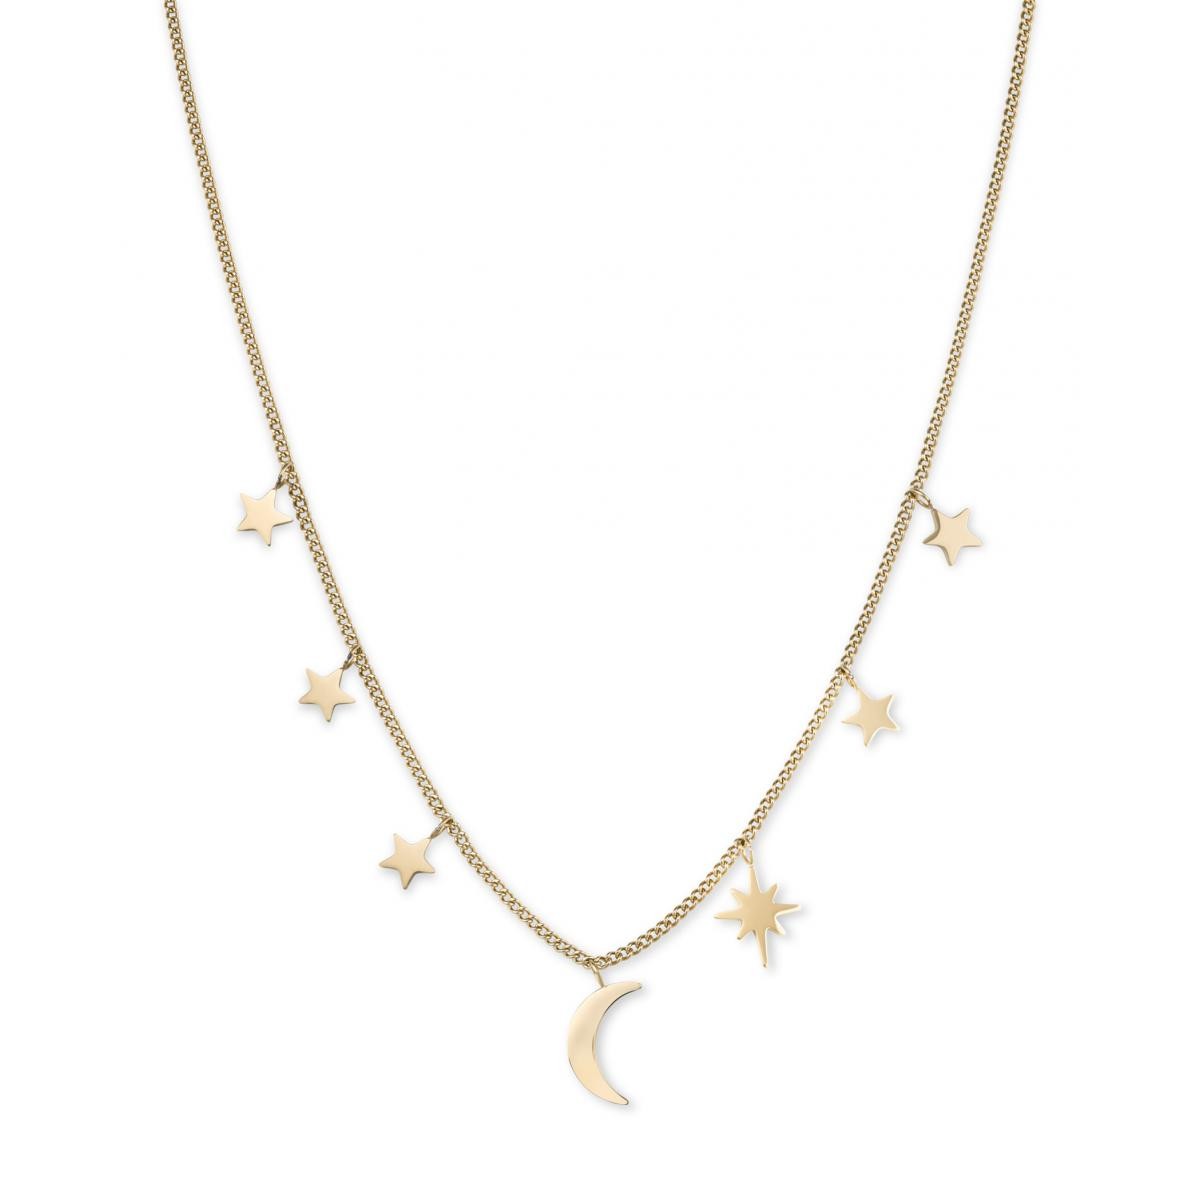 Promo : Collier et pendentif Rosefield MUSNG-J211 - Collection THE LOIS Collier multi étoiles doré A